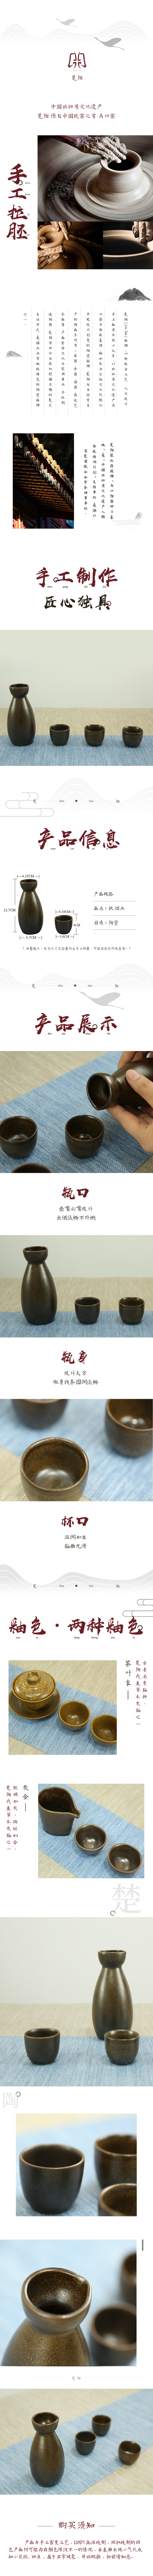 淘宝美工劳盼陶瓷茶具详情页面设计作品